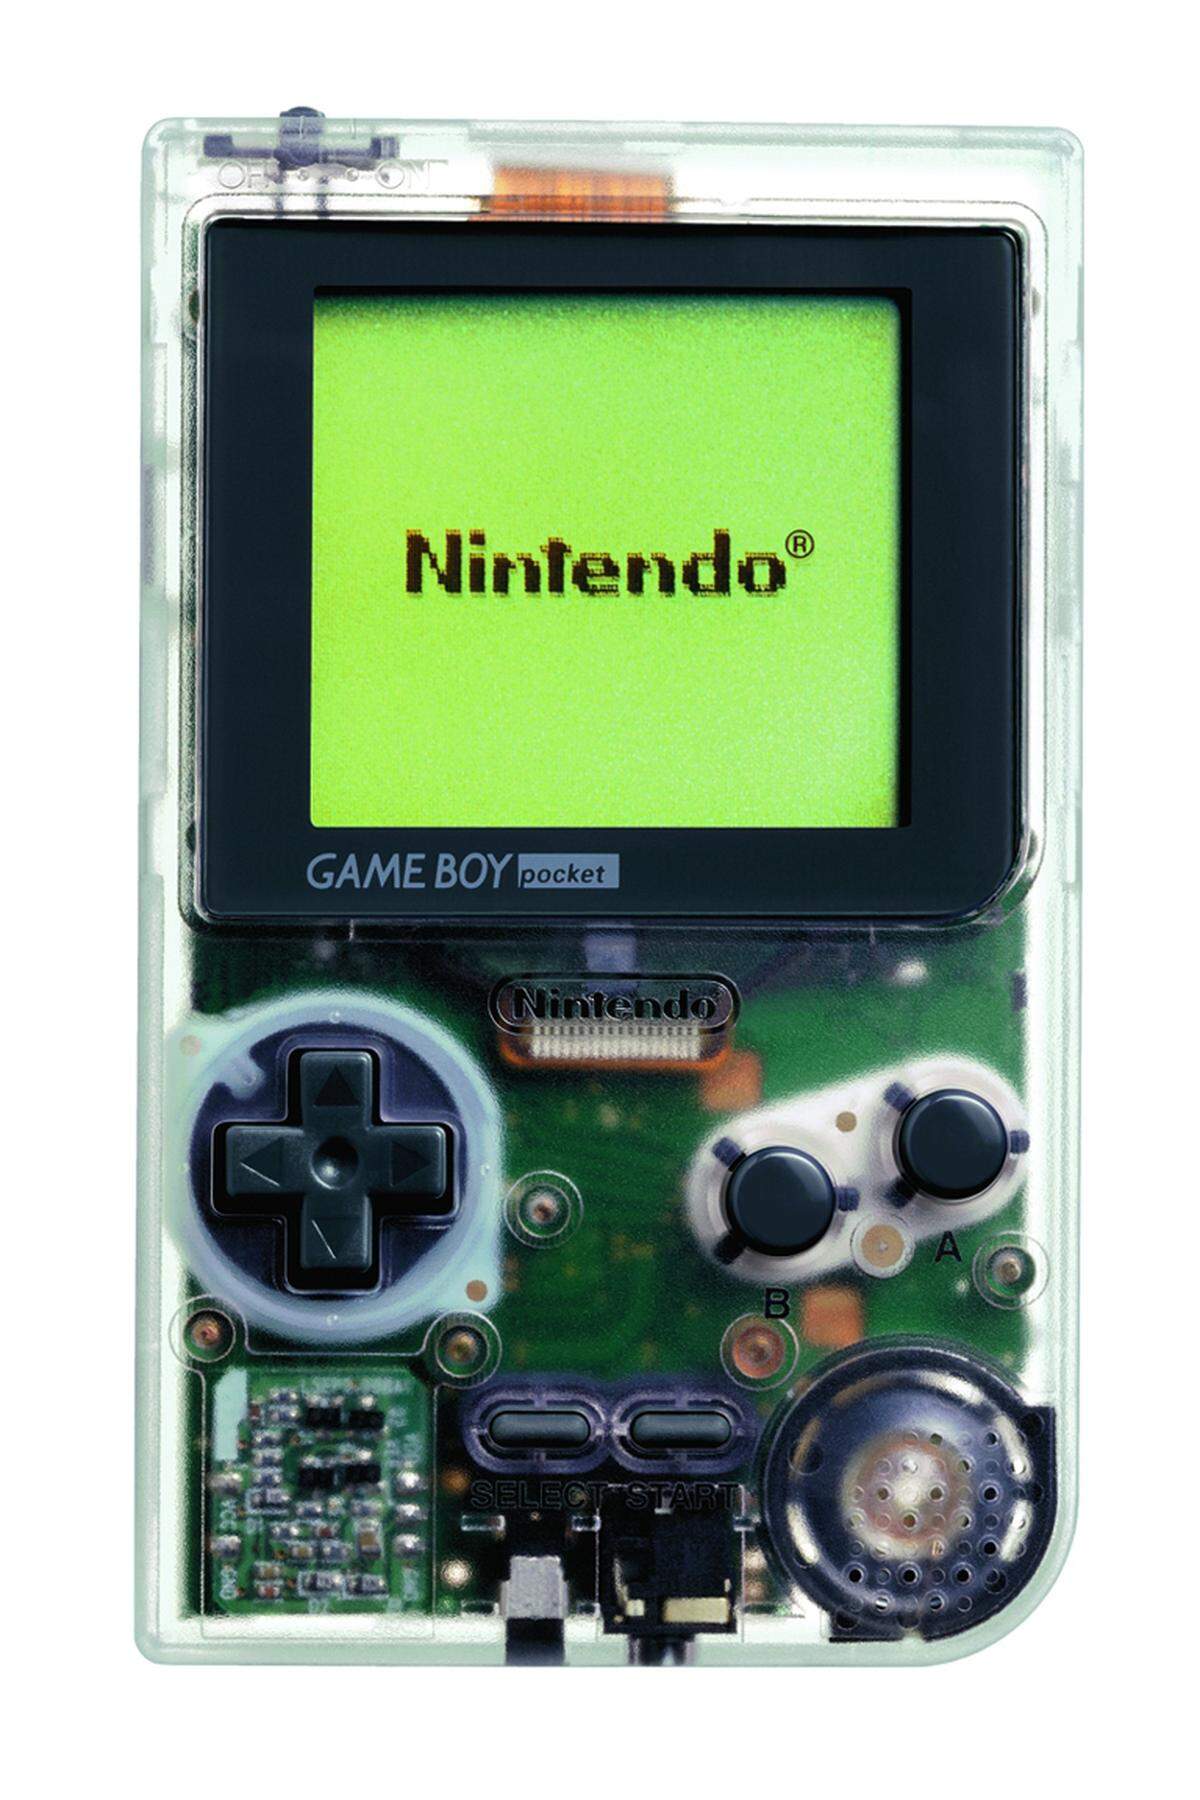 Der Batterieverbrauch. Wenn es nach den Experten geht, die das seit den 1980er-Jahren publizierte Videospielmagazin „Mean Machines“ befragte, warum der technisch unterlegene Game Boy den Kampf um die Vormachtstellung am mobilen Spielesektor in den 1990er-Jahren gewonnen hat, dann wird seine Batterie-Sparsamkeit als wichtiger Faktor genannt. Klar, das Lynx von Atari und das Game Gear von Sega, die beide nur kurz nach dem Game Boy auf den Markt kamen, hatten bereits Farbdisplays – vordergründig ein Killer-Feature. Doch in Wirklichkeit war dies der große Nachteil dieser Geräte. Sie waren schwer und teuer. Nicht nur in der Anschaffung, sondern auch im Betrieb.